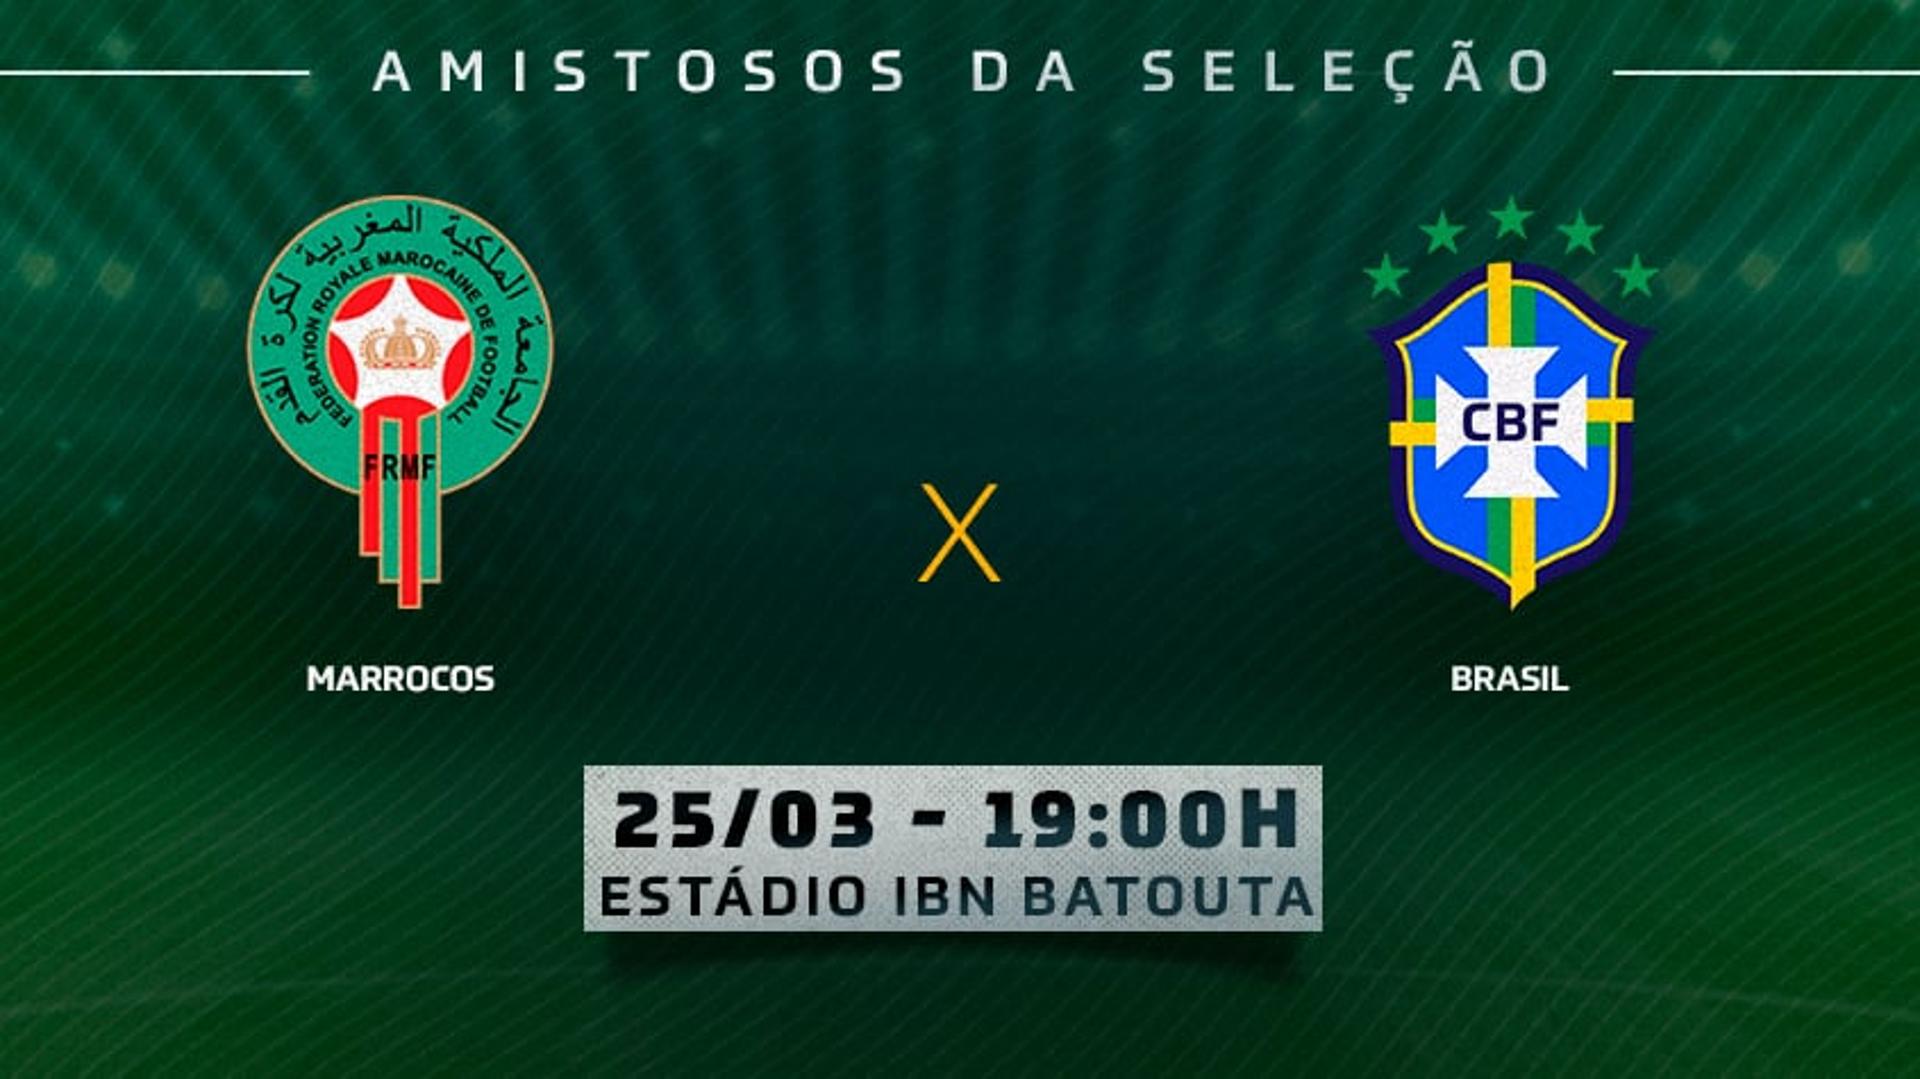 TR - Marrocos x Brasil